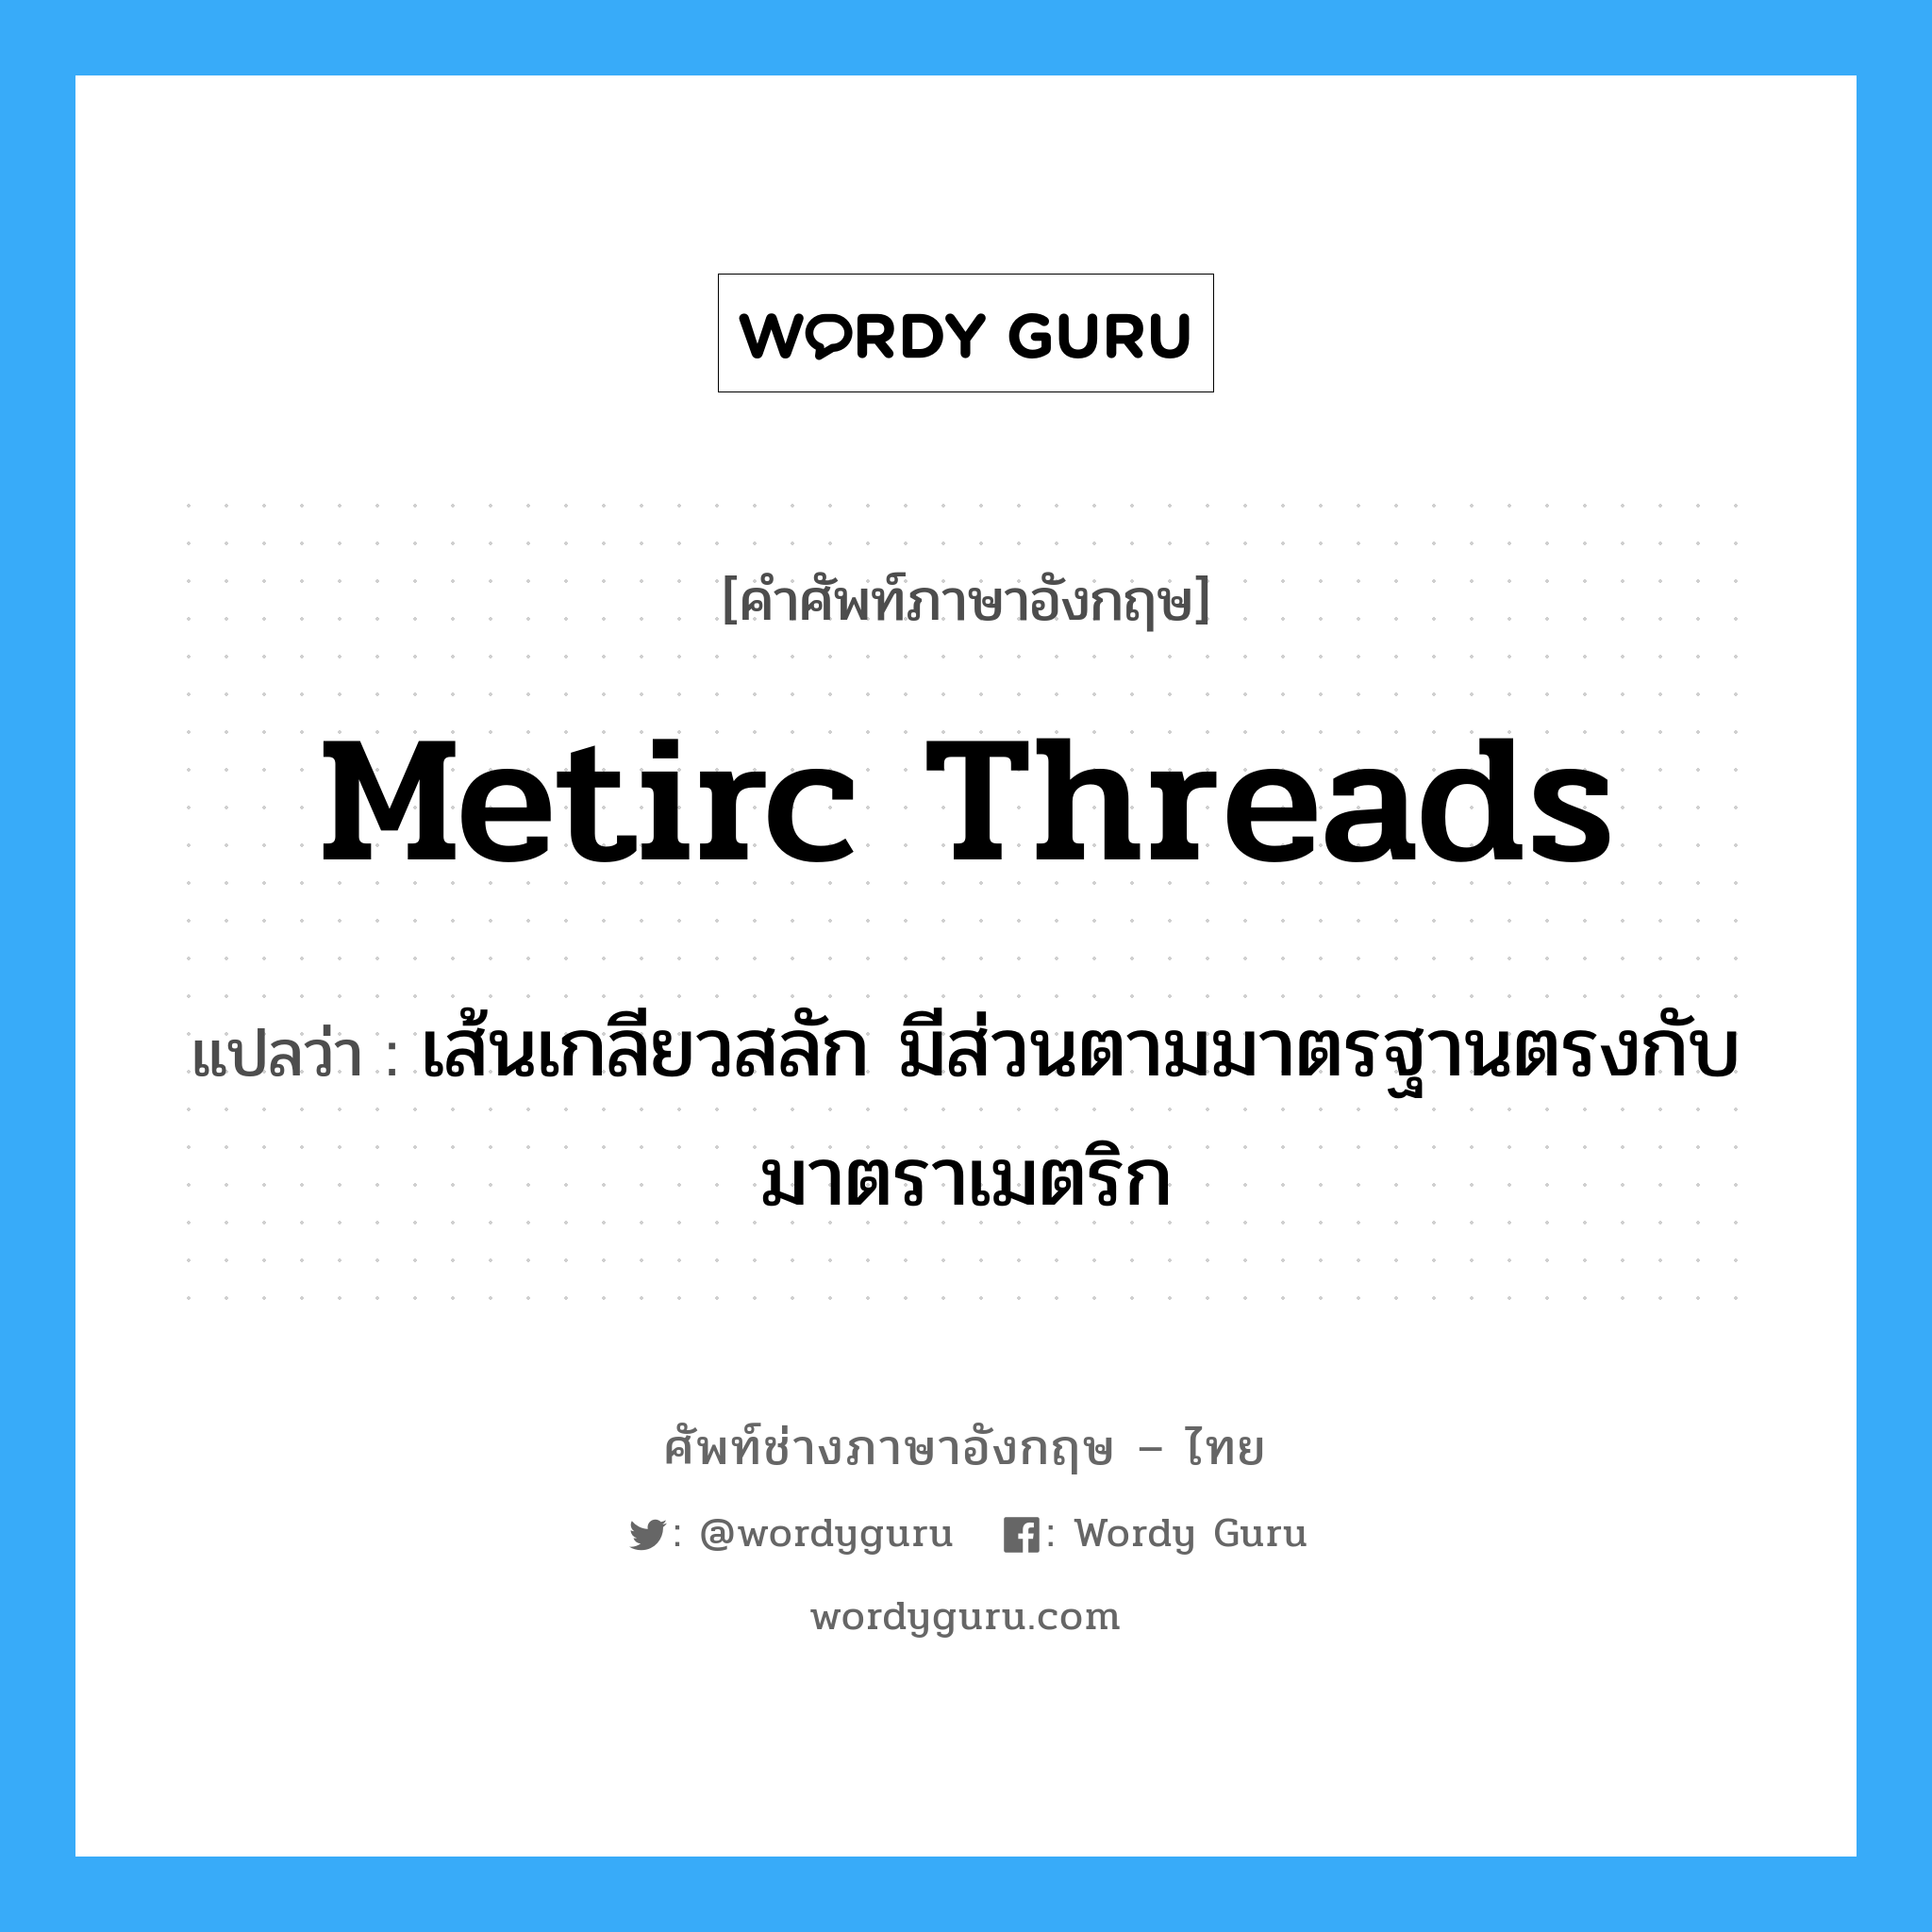 metirc threads แปลว่า?, คำศัพท์ช่างภาษาอังกฤษ - ไทย metirc threads คำศัพท์ภาษาอังกฤษ metirc threads แปลว่า เส้นเกลียวสลัก มีส่วนตามมาตรฐานตรงกับมาตราเมตริก